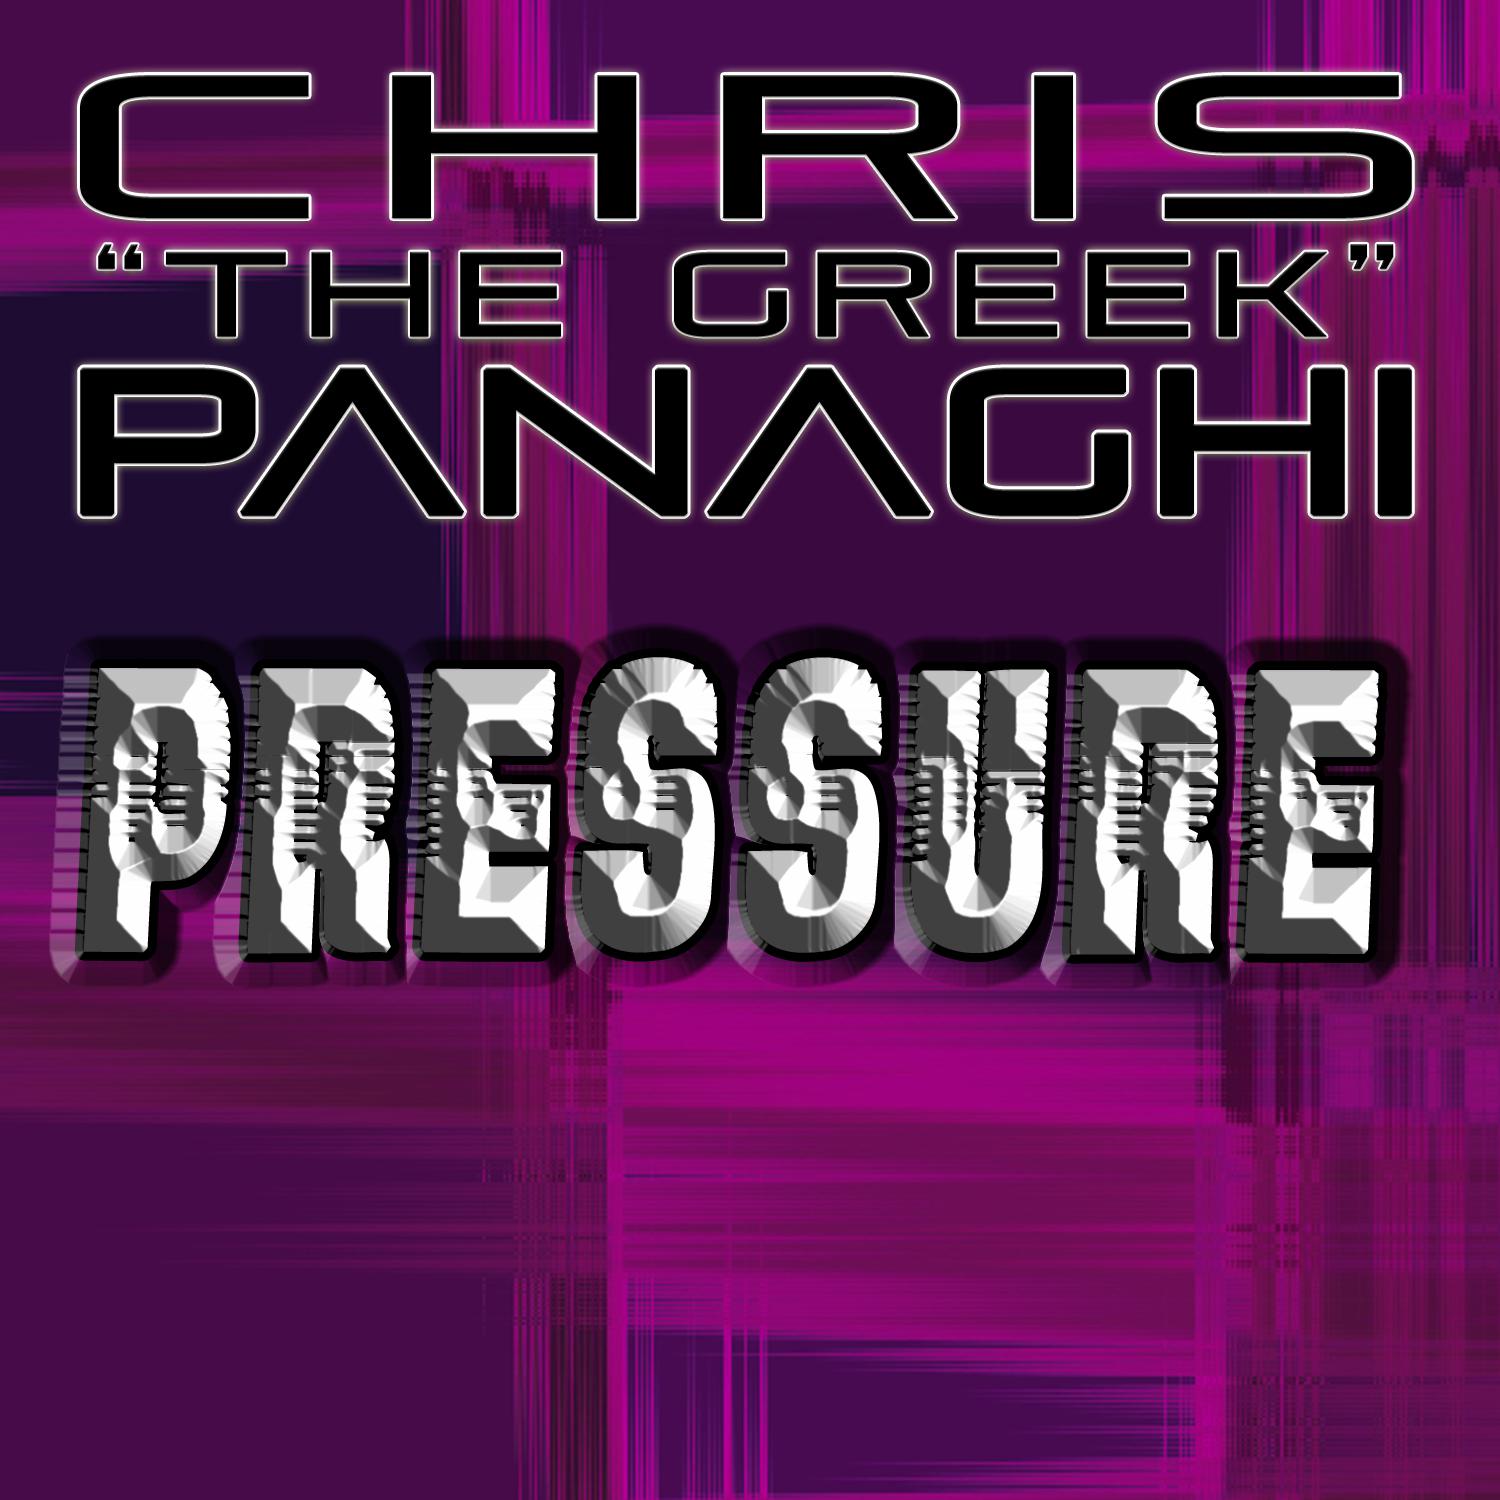 Pressure (DJG Club Mix)